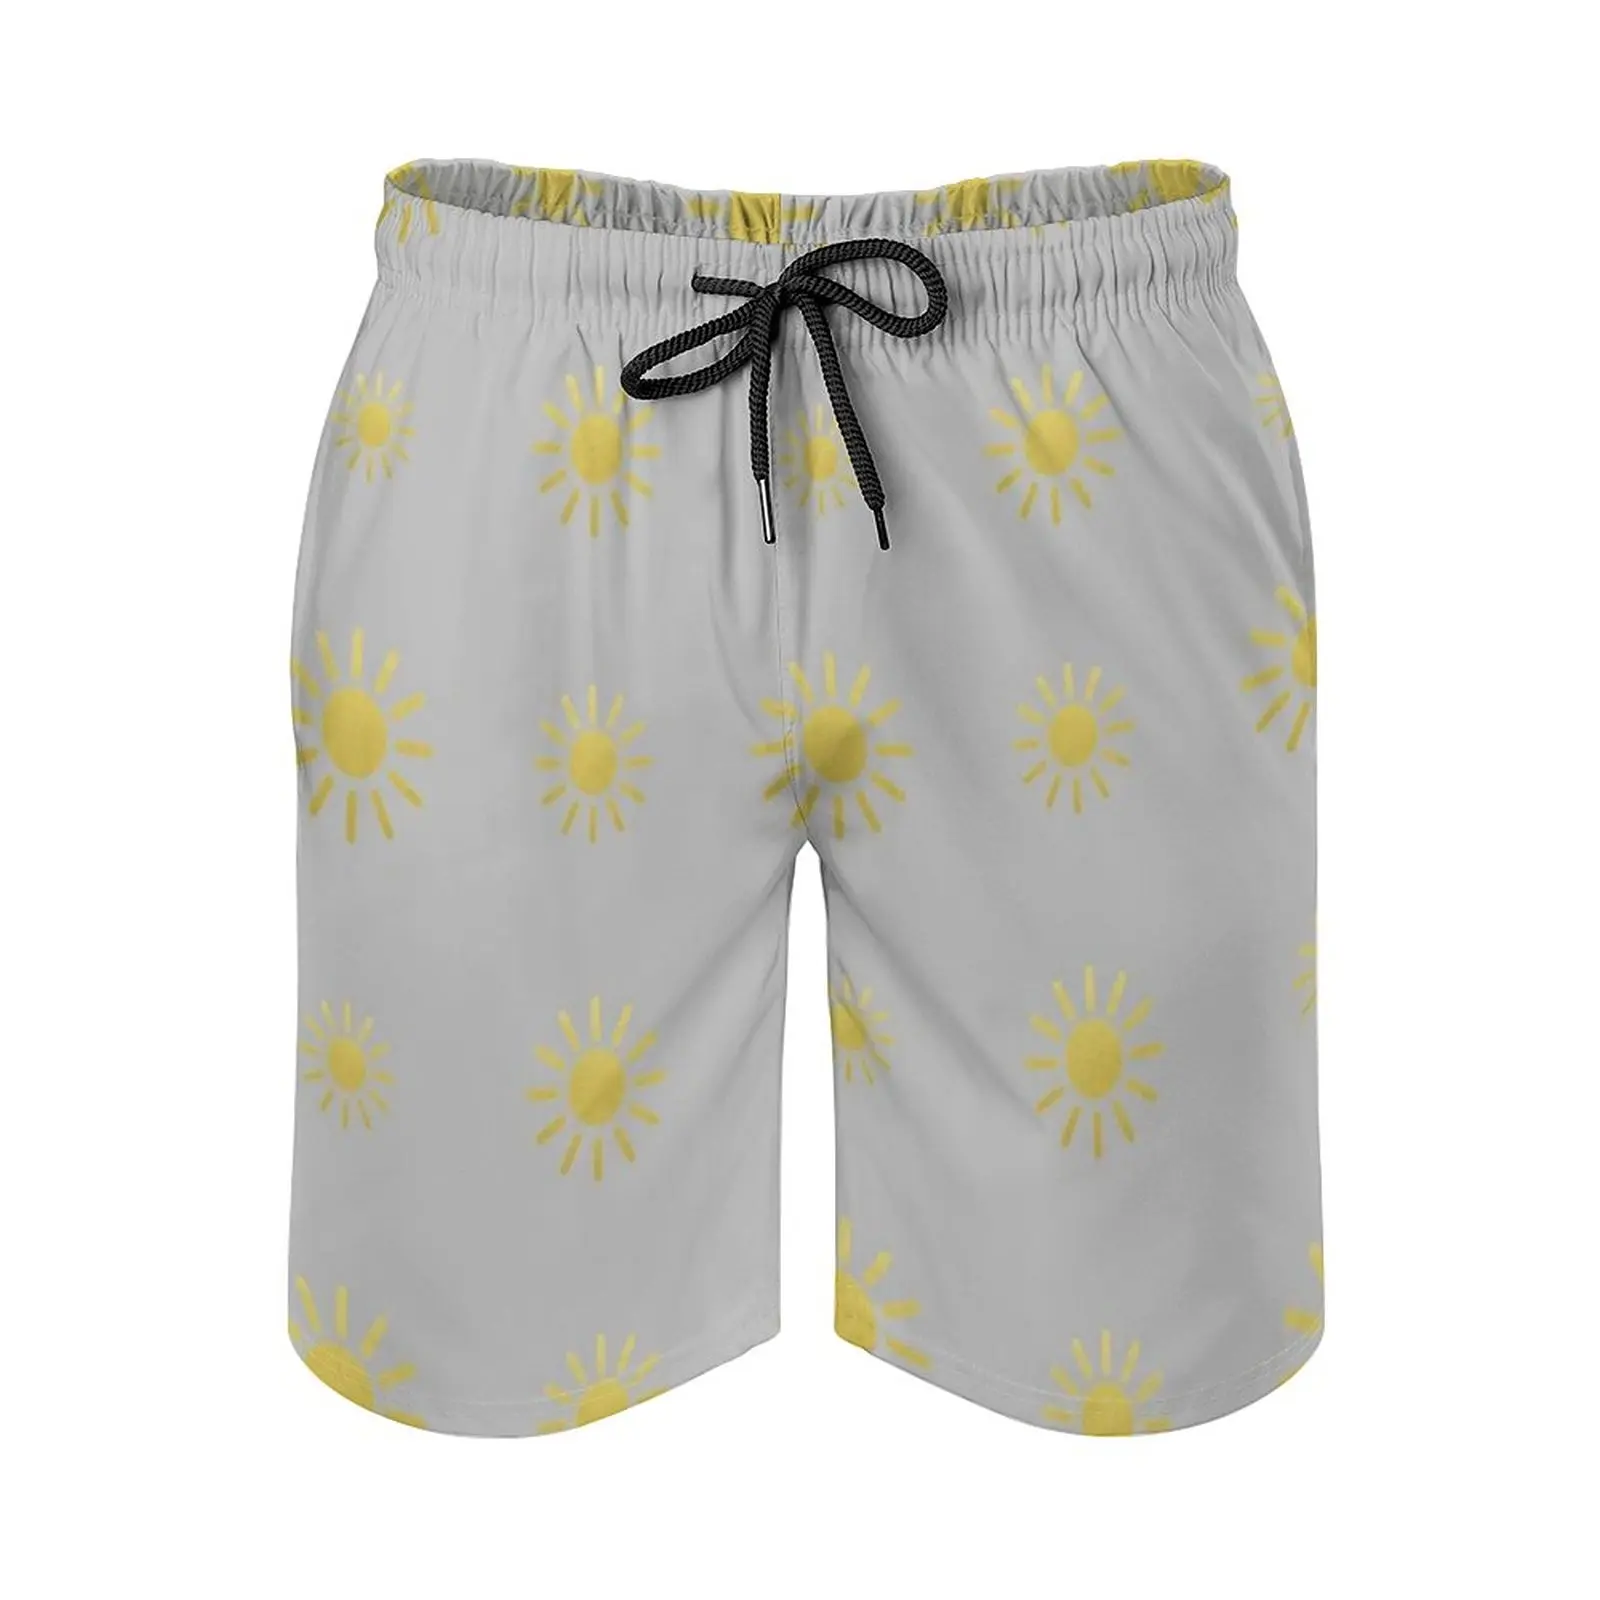 Мужские пляжные шорты Sun Quad, быстросохнущие дорожные плавки для купания, штаны для серфинга, спортивные брюки, модные дизайнерские трендовые милые